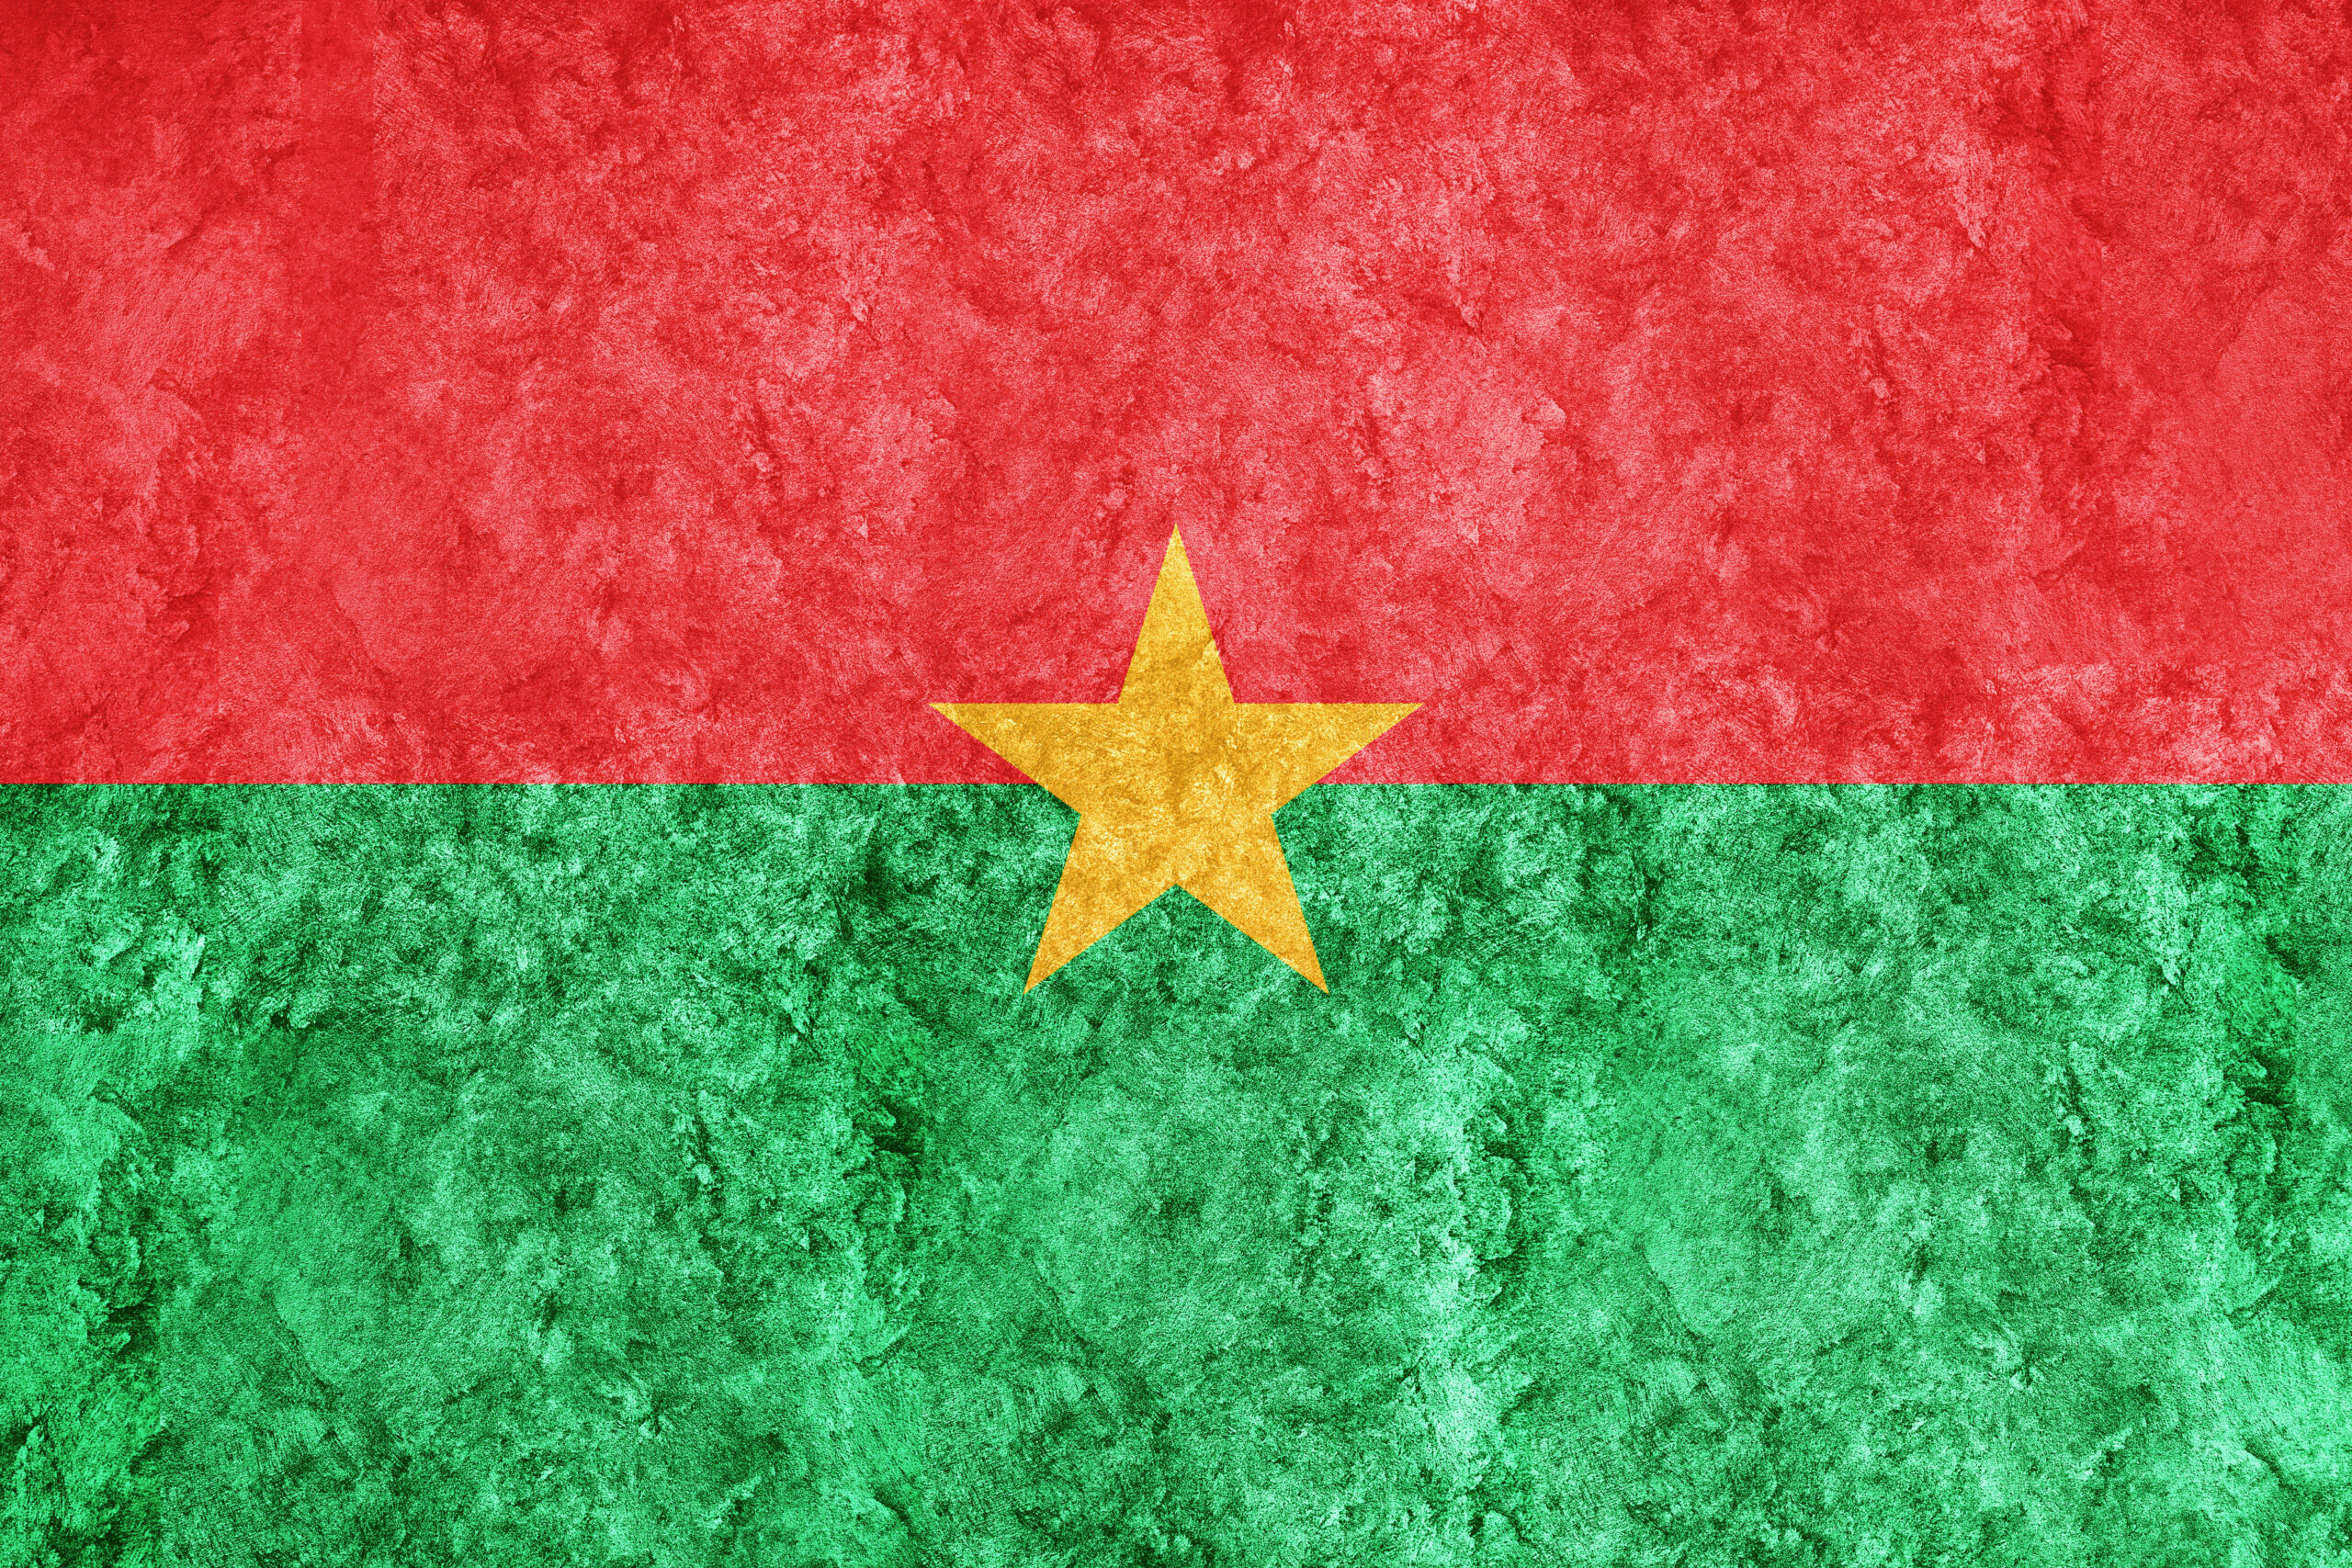 Colpo di stato in Burkina Faso: una ribellione per tutelarsi dall’Occidente?